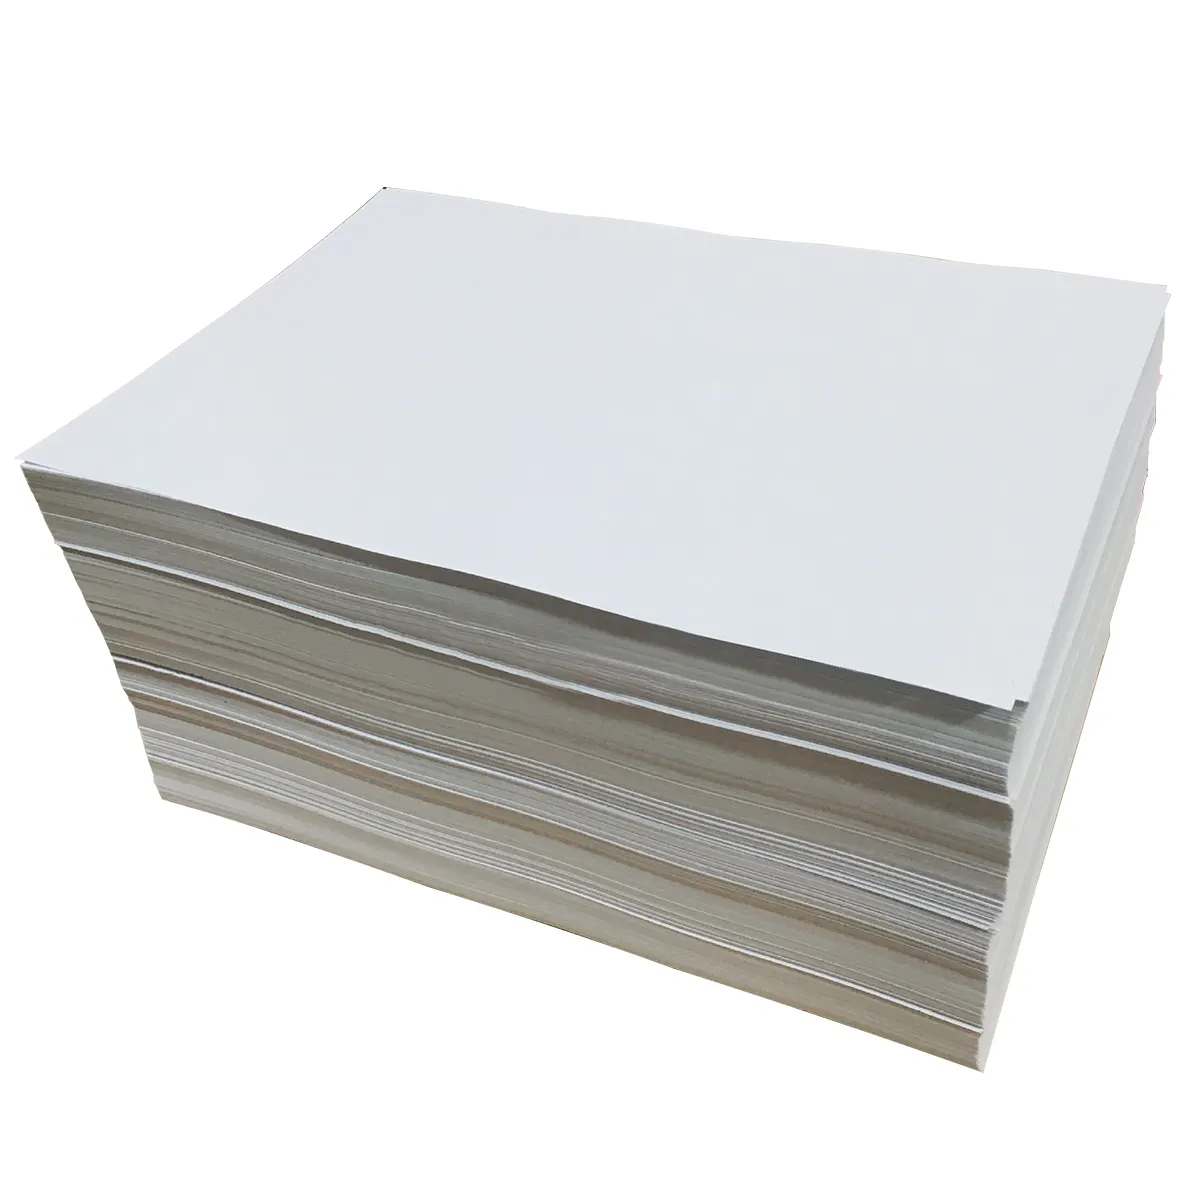 ورق ورقي مقاوم للحرارة العالية ورق رليز أبيض ورق رليز مطلي بالسيلكون